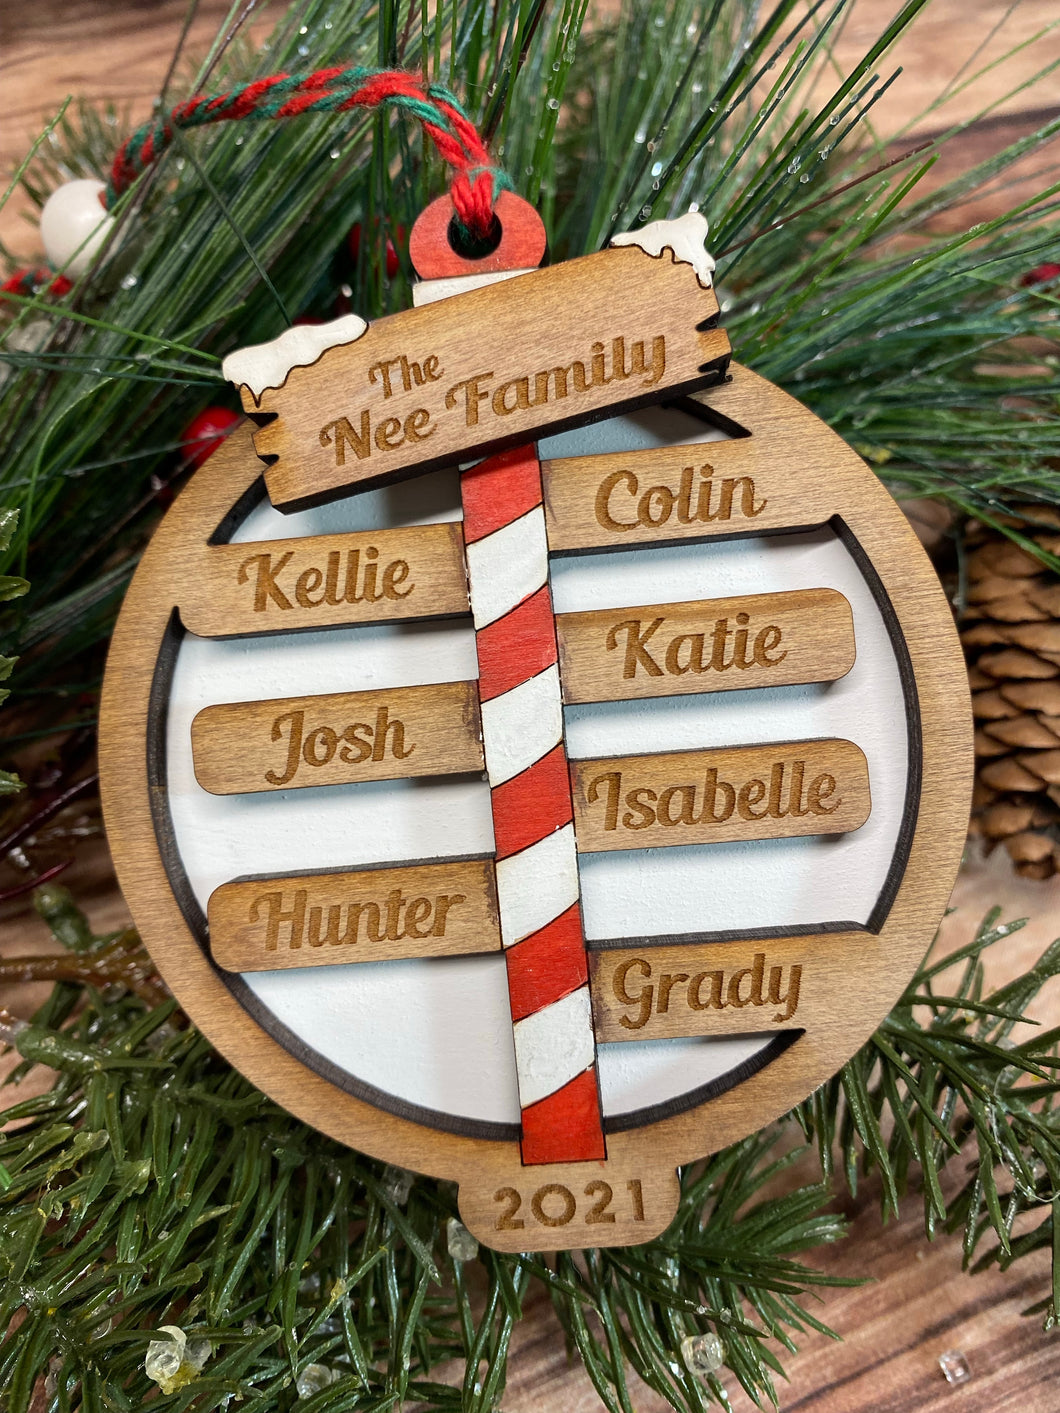 North Pole Family Ornament